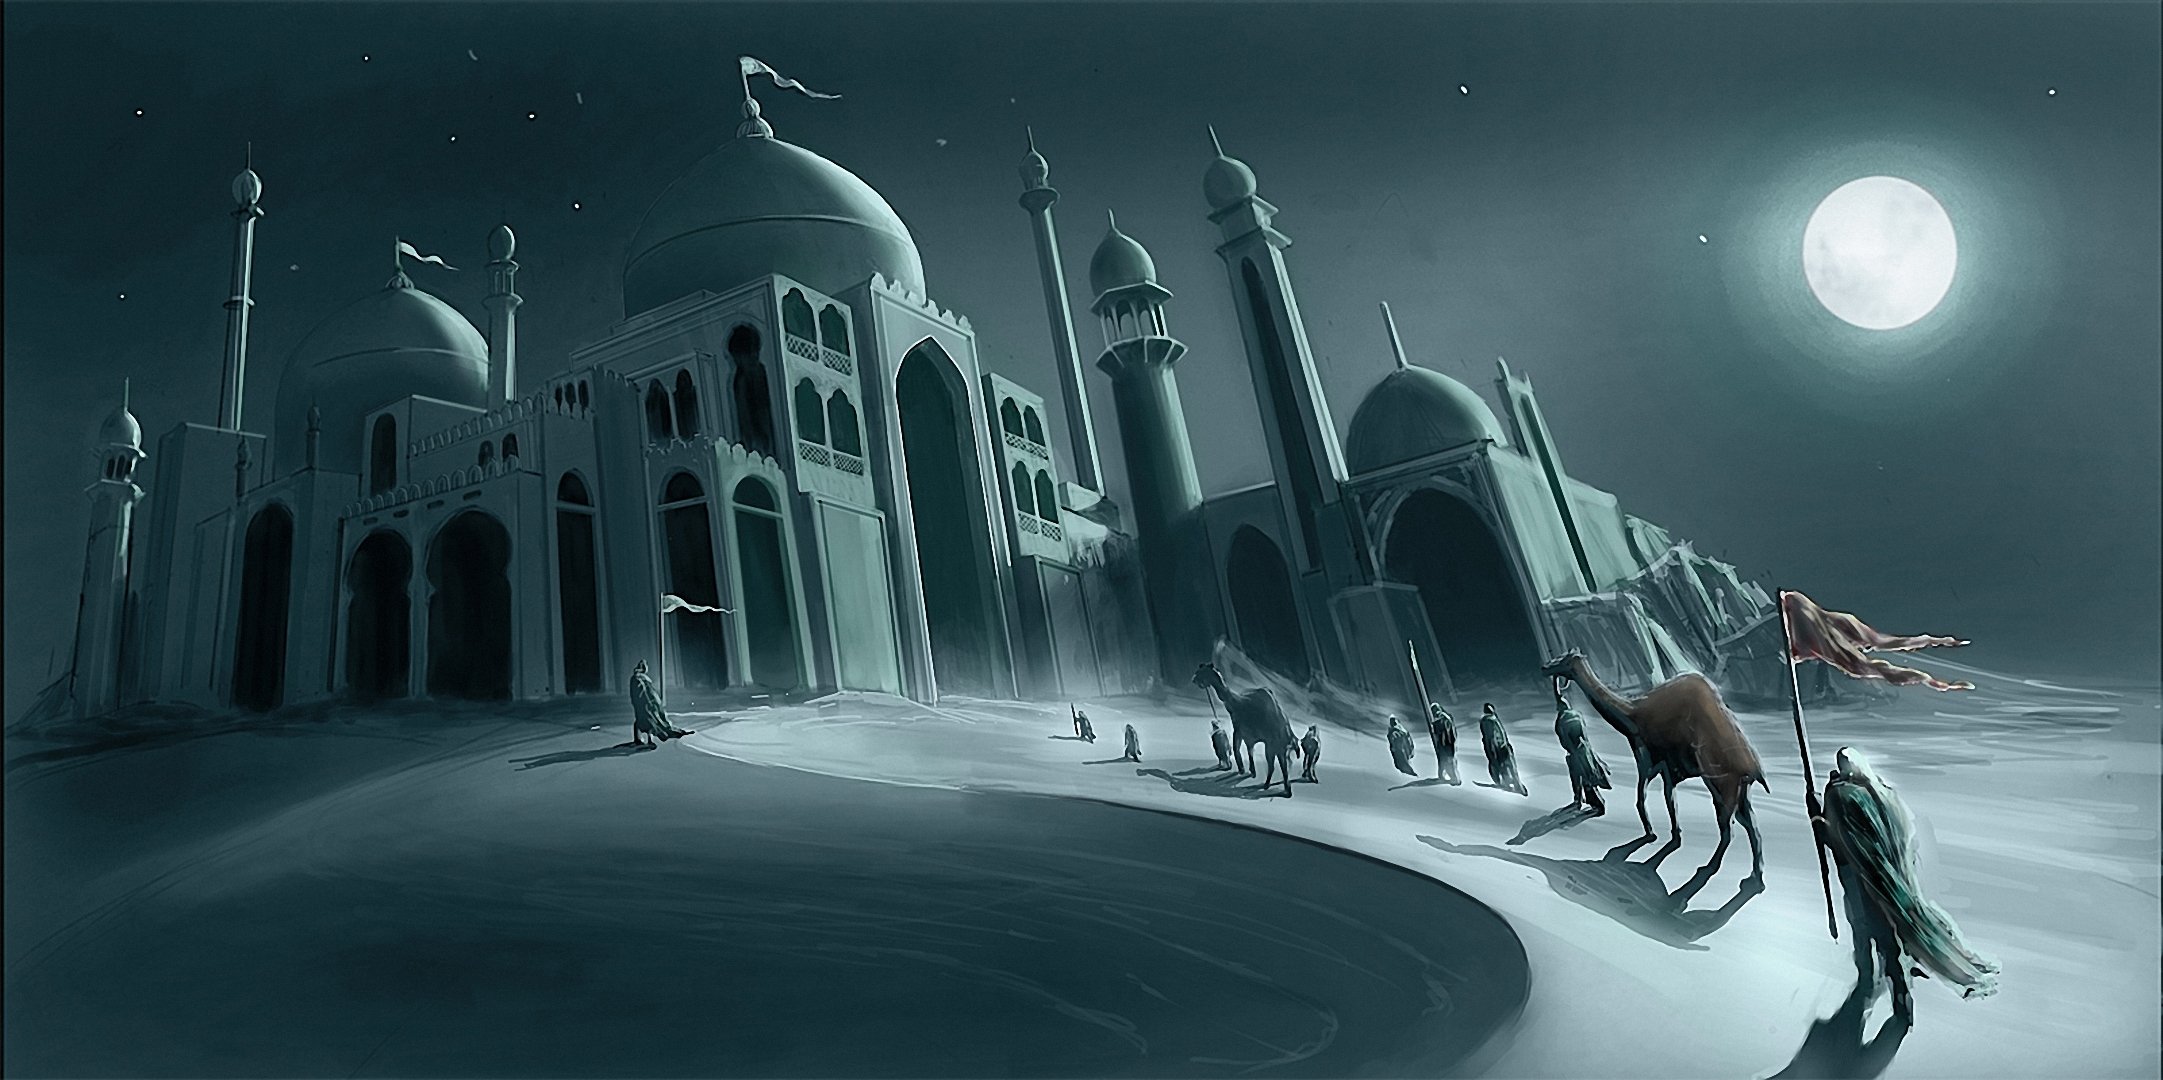 Караван сити. Медина мечеть минарет. Город в пустыне. Город в пустыне фэнтези. Города в пустыне картины.